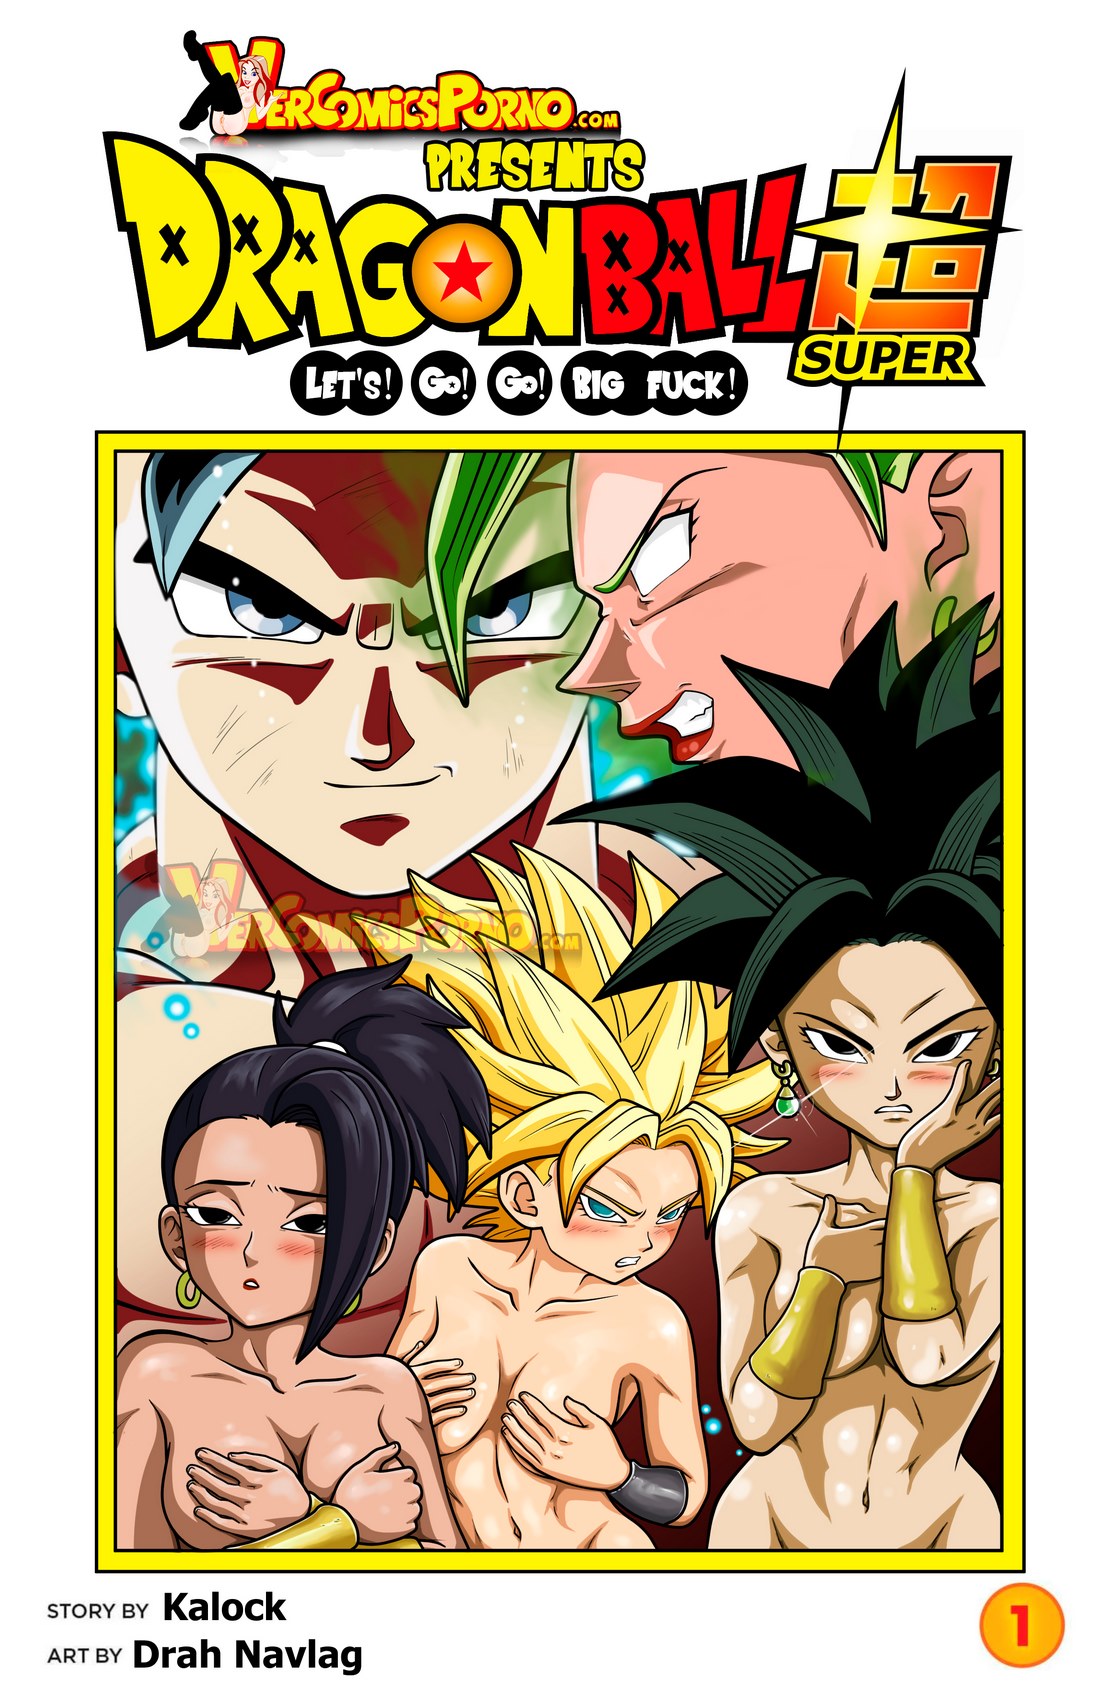 1111px x 1700px - Dragon Ball Super- Lets Go Go Big Fuck - Porn Cartoon Comics